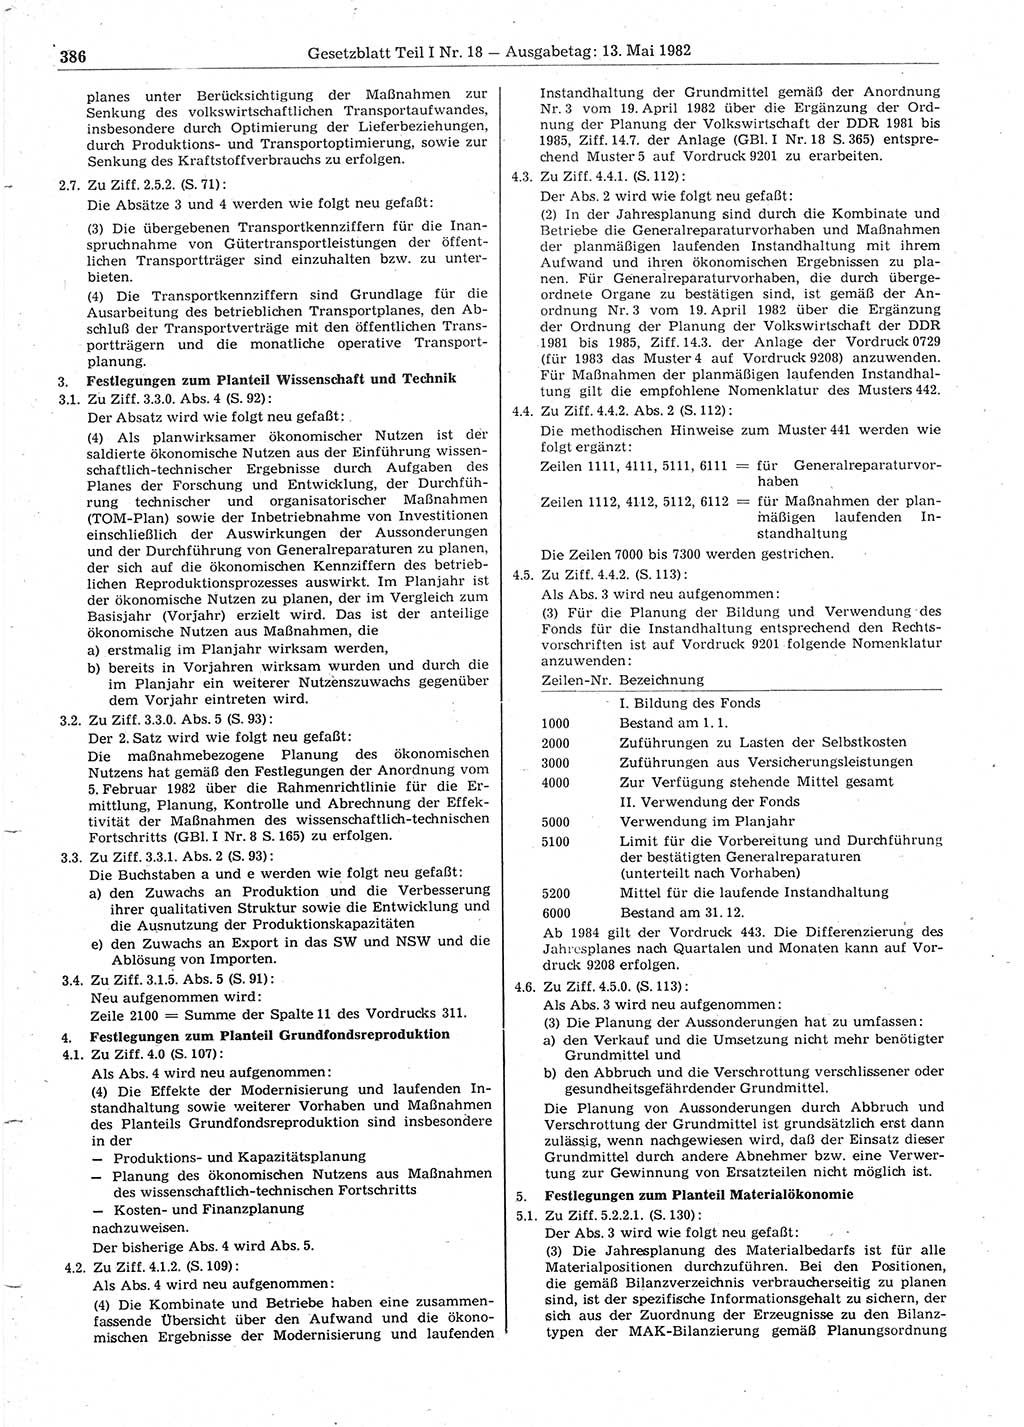 Gesetzblatt (GBl.) der Deutschen Demokratischen Republik (DDR) Teil Ⅰ 1982, Seite 386 (GBl. DDR Ⅰ 1982, S. 386)